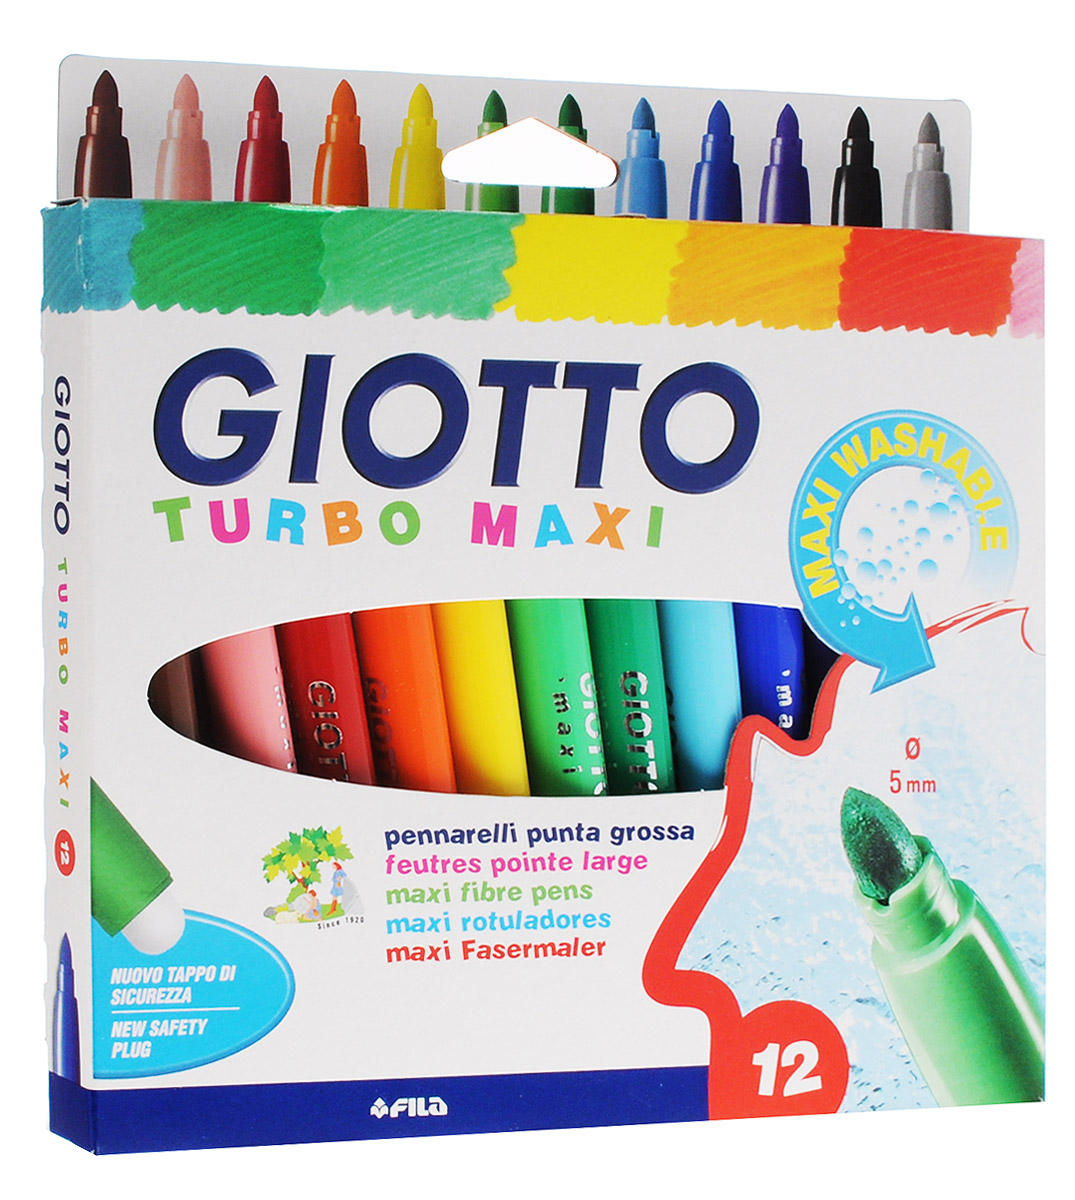 Набор Giotto Turbo Maxi - это 12 ярких насыщенных цветных фломастеров. Цвета фломастеров - черный, фиолетовый, синий, серый, красный, желтый, оранжевый, коричневый, голубой, зеленый, розовый, светло-зеленый.Наконечники фломастеров устойчивы к повышенному давлению, не разнашиваются со временем. Каждый фломастер оснащен плотным колпачком с вентиляцией, надежно защищающим чернила от высыхания. Чернила изготовлены на водной основе. Легко смываются с большинства типов тканей и рук.Фломастеры Giotto Turbo Maxi - идеальный инструмент для самовыражения и развития маленького художника!